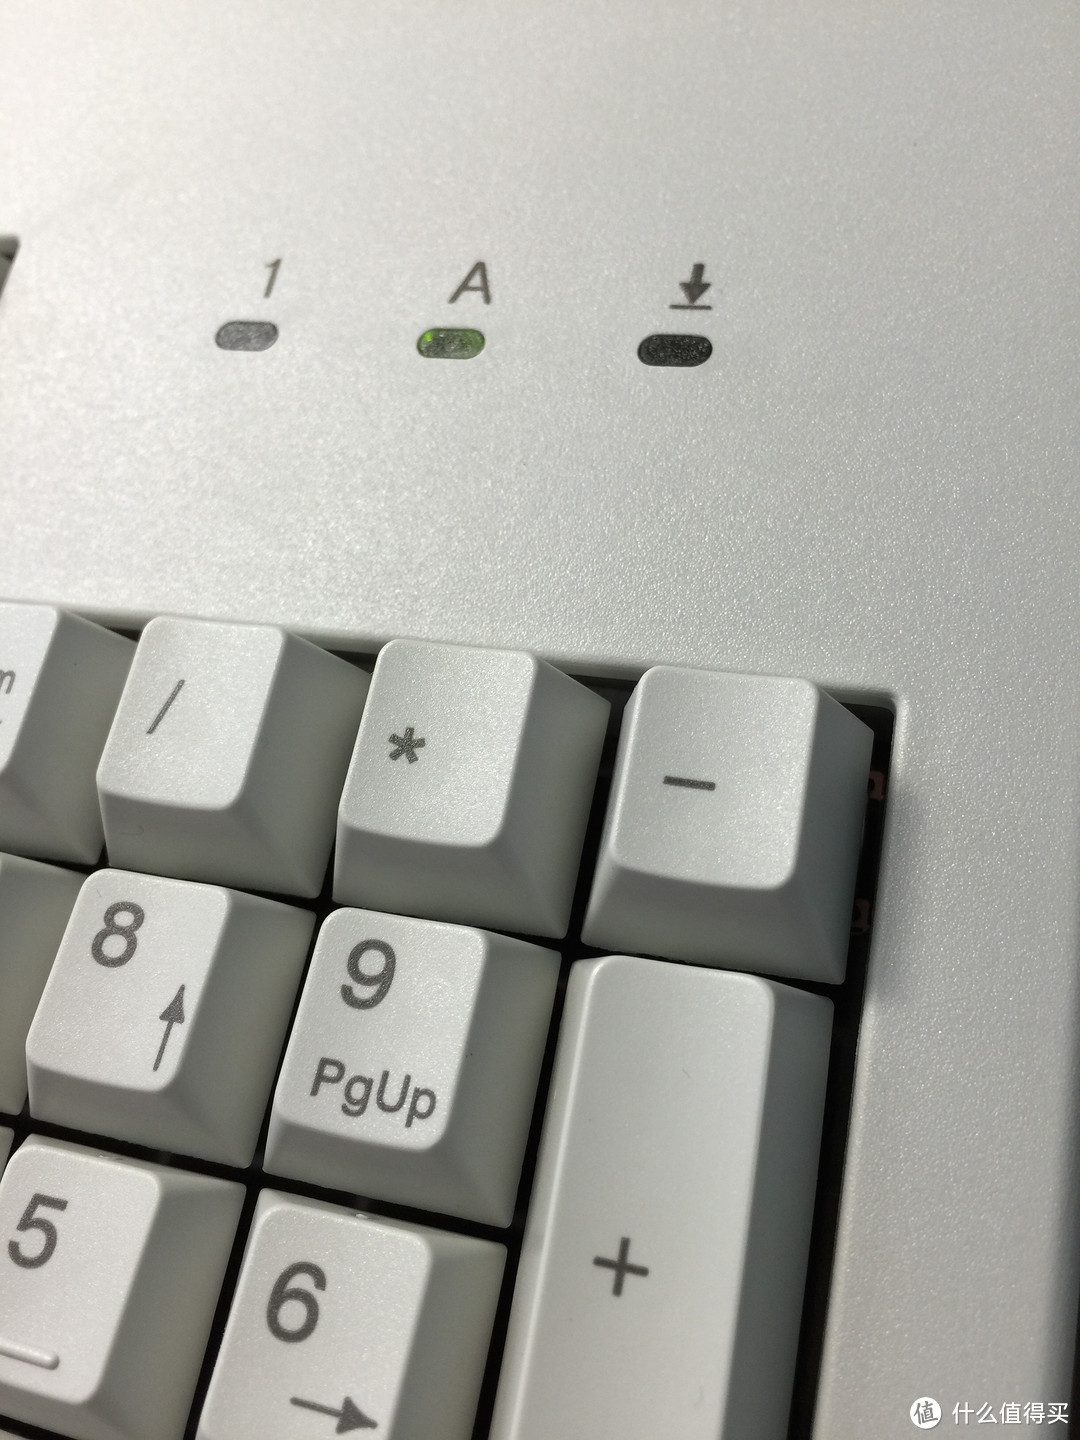 一个小小的遗憾就是Mac系统下，数字1下的小键盘灯不亮